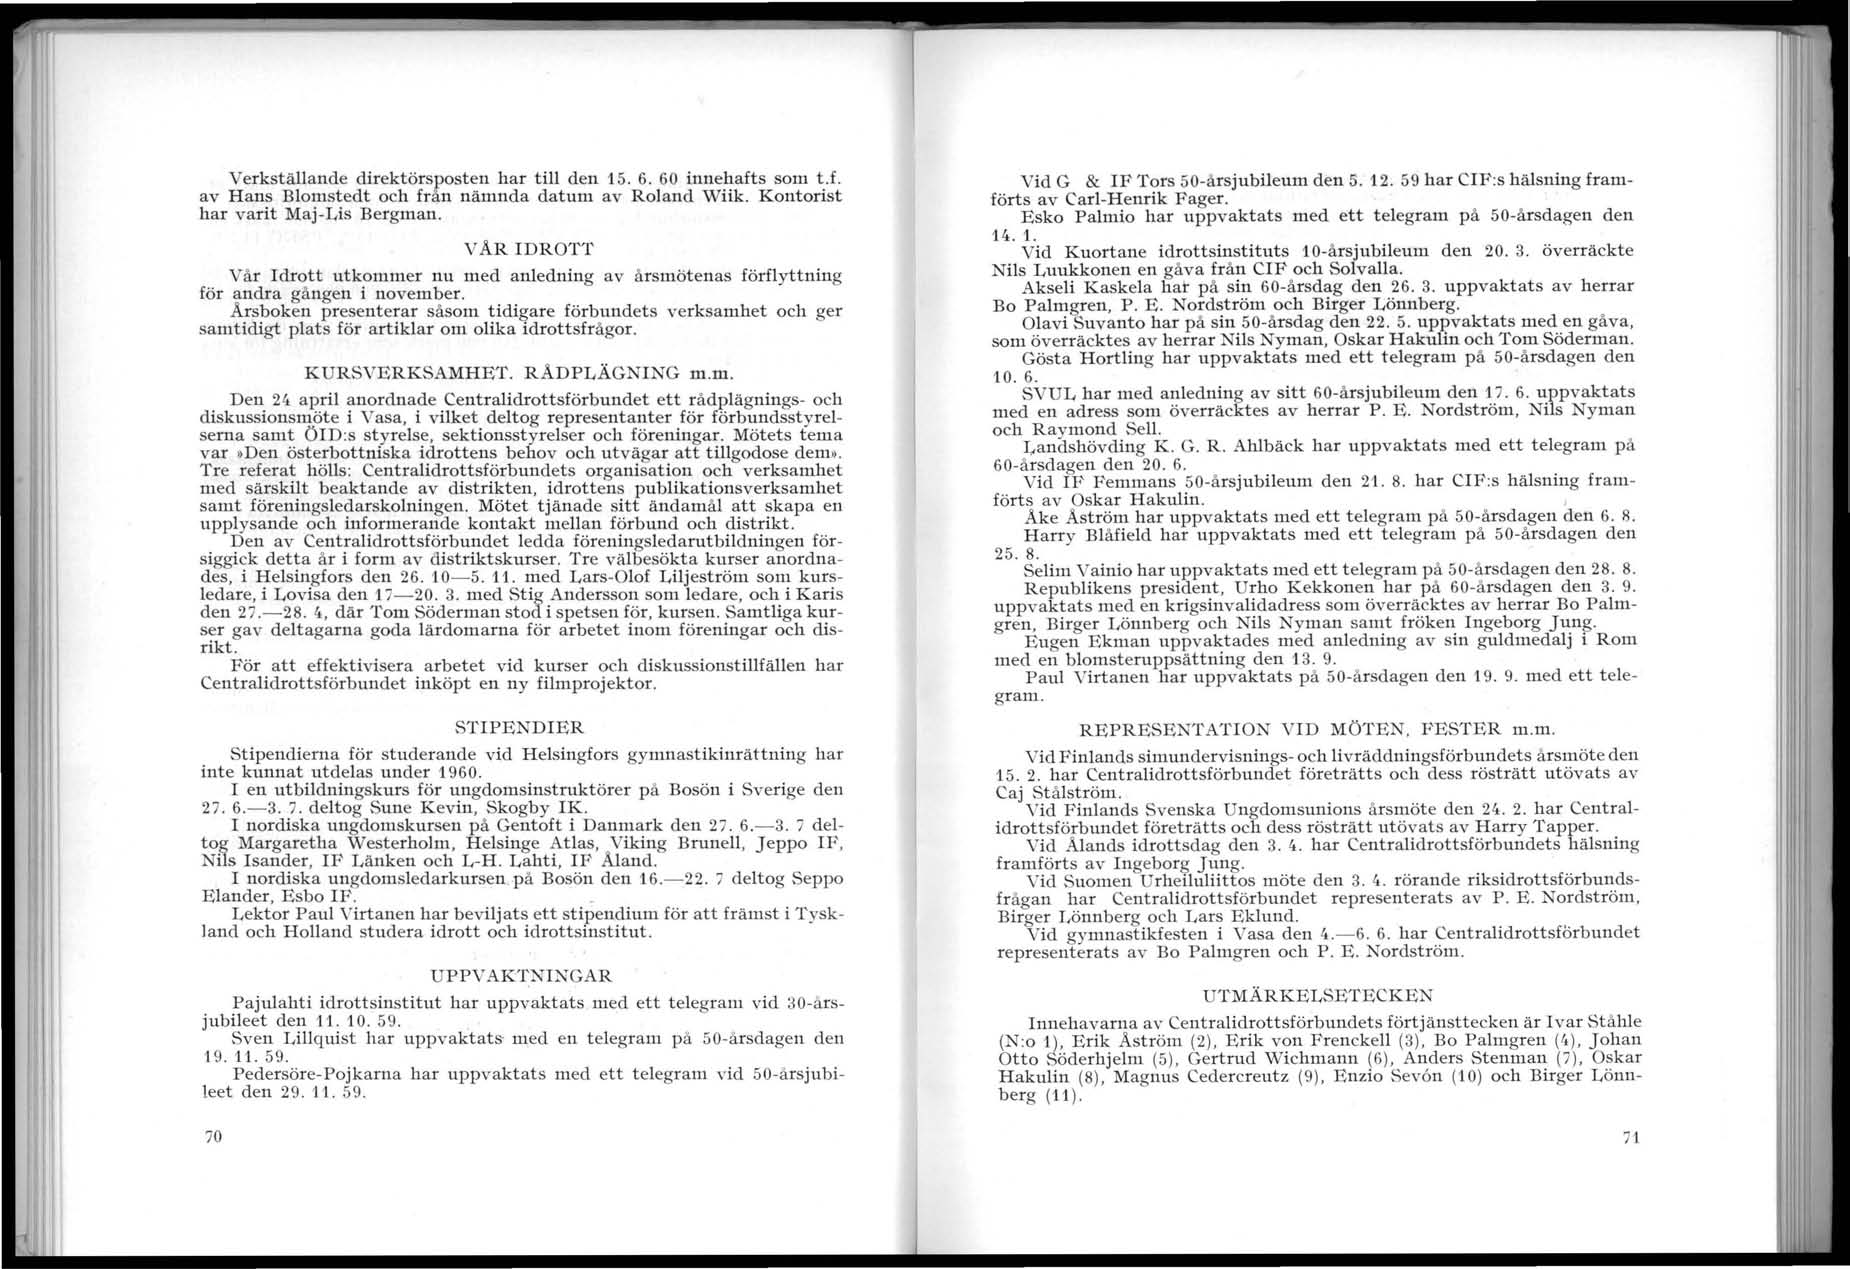 , --.c w... - ~ _ -~.---. ".' 1 i i ii l' Verkställande direktörsposten har tili den 1S. 6. 60 innehafts som t.f. av Hans Blomstedt och från nämnda datum av Roland Wiik.